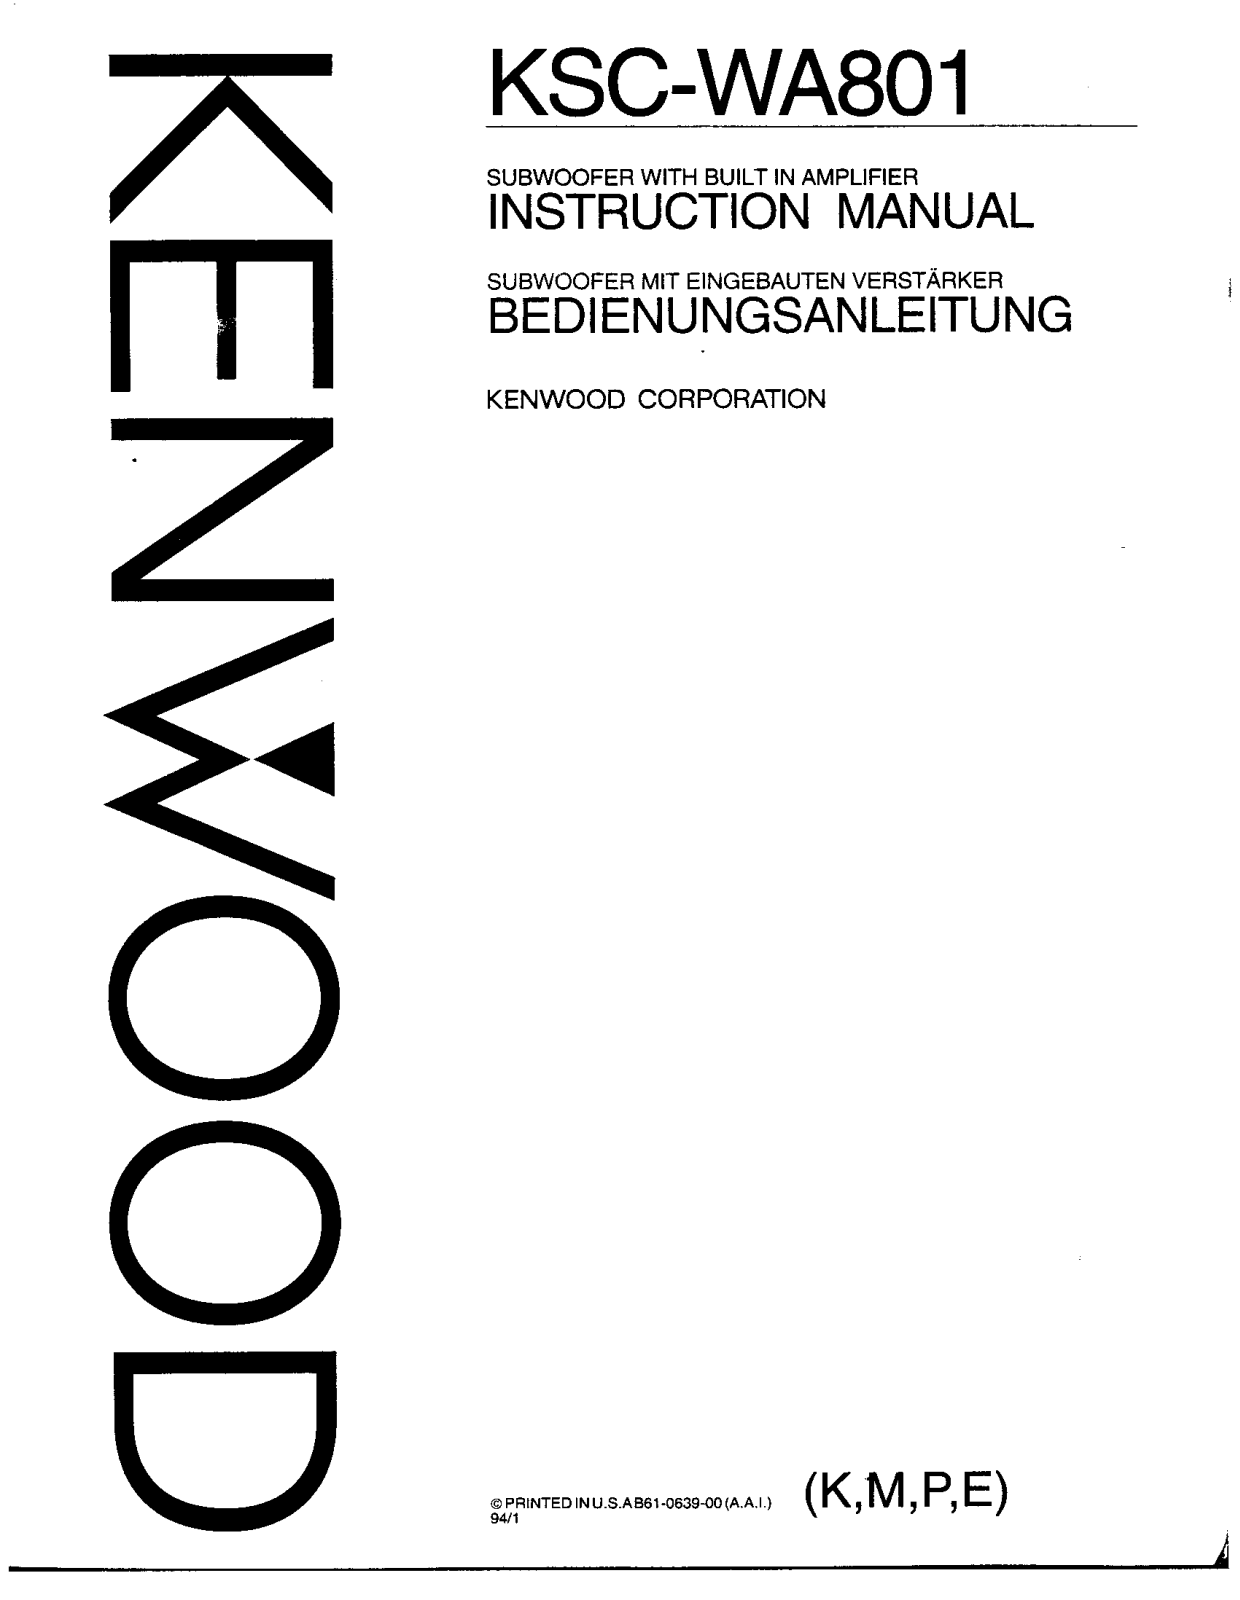 Kenwood KSC-WA801 Owner's Manual